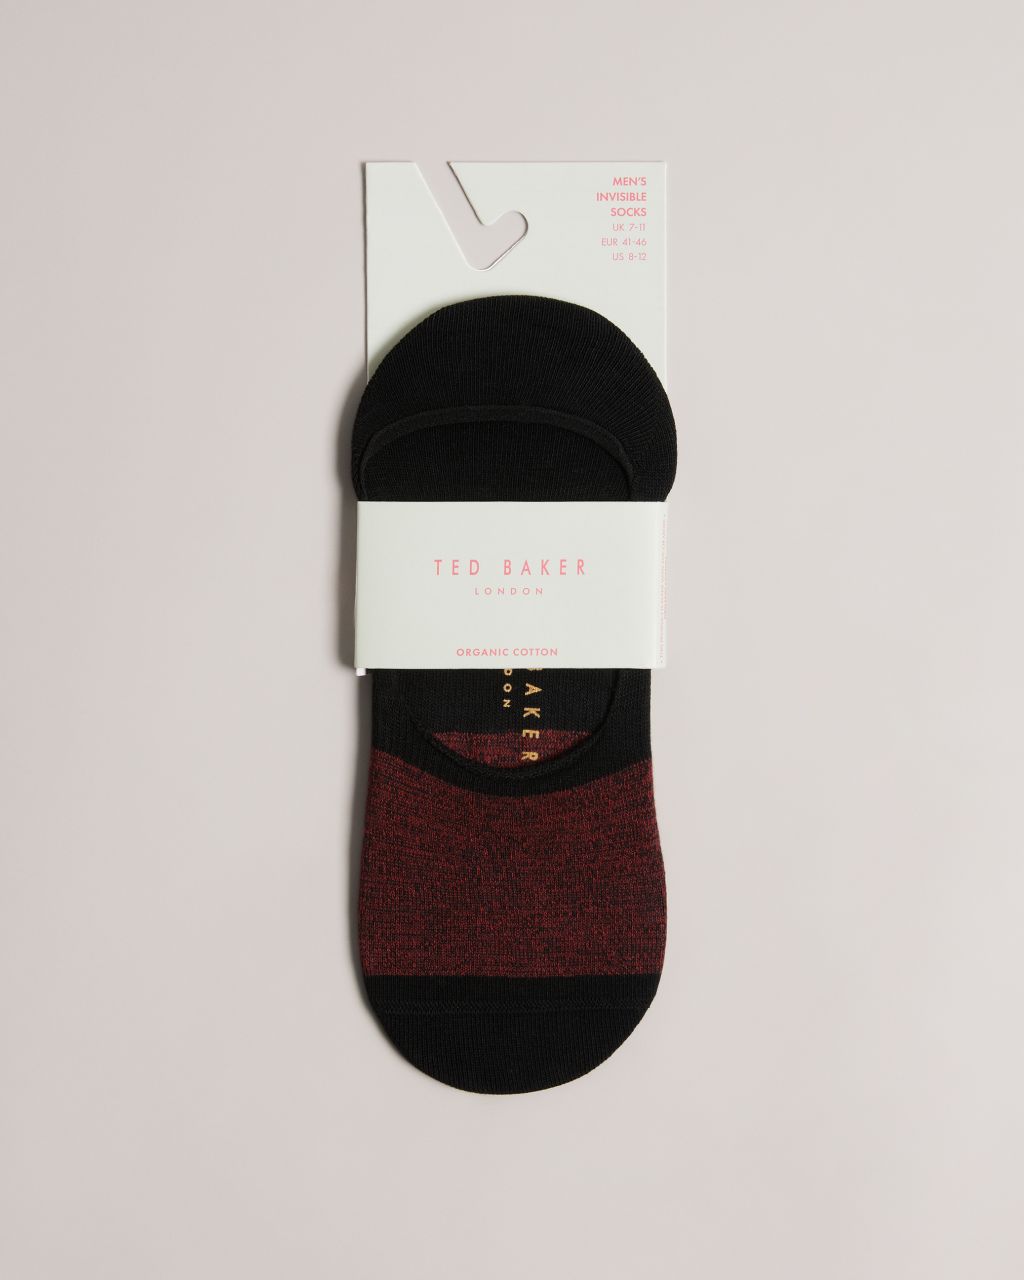 Men's Invisible Socks in Black, Nosock product